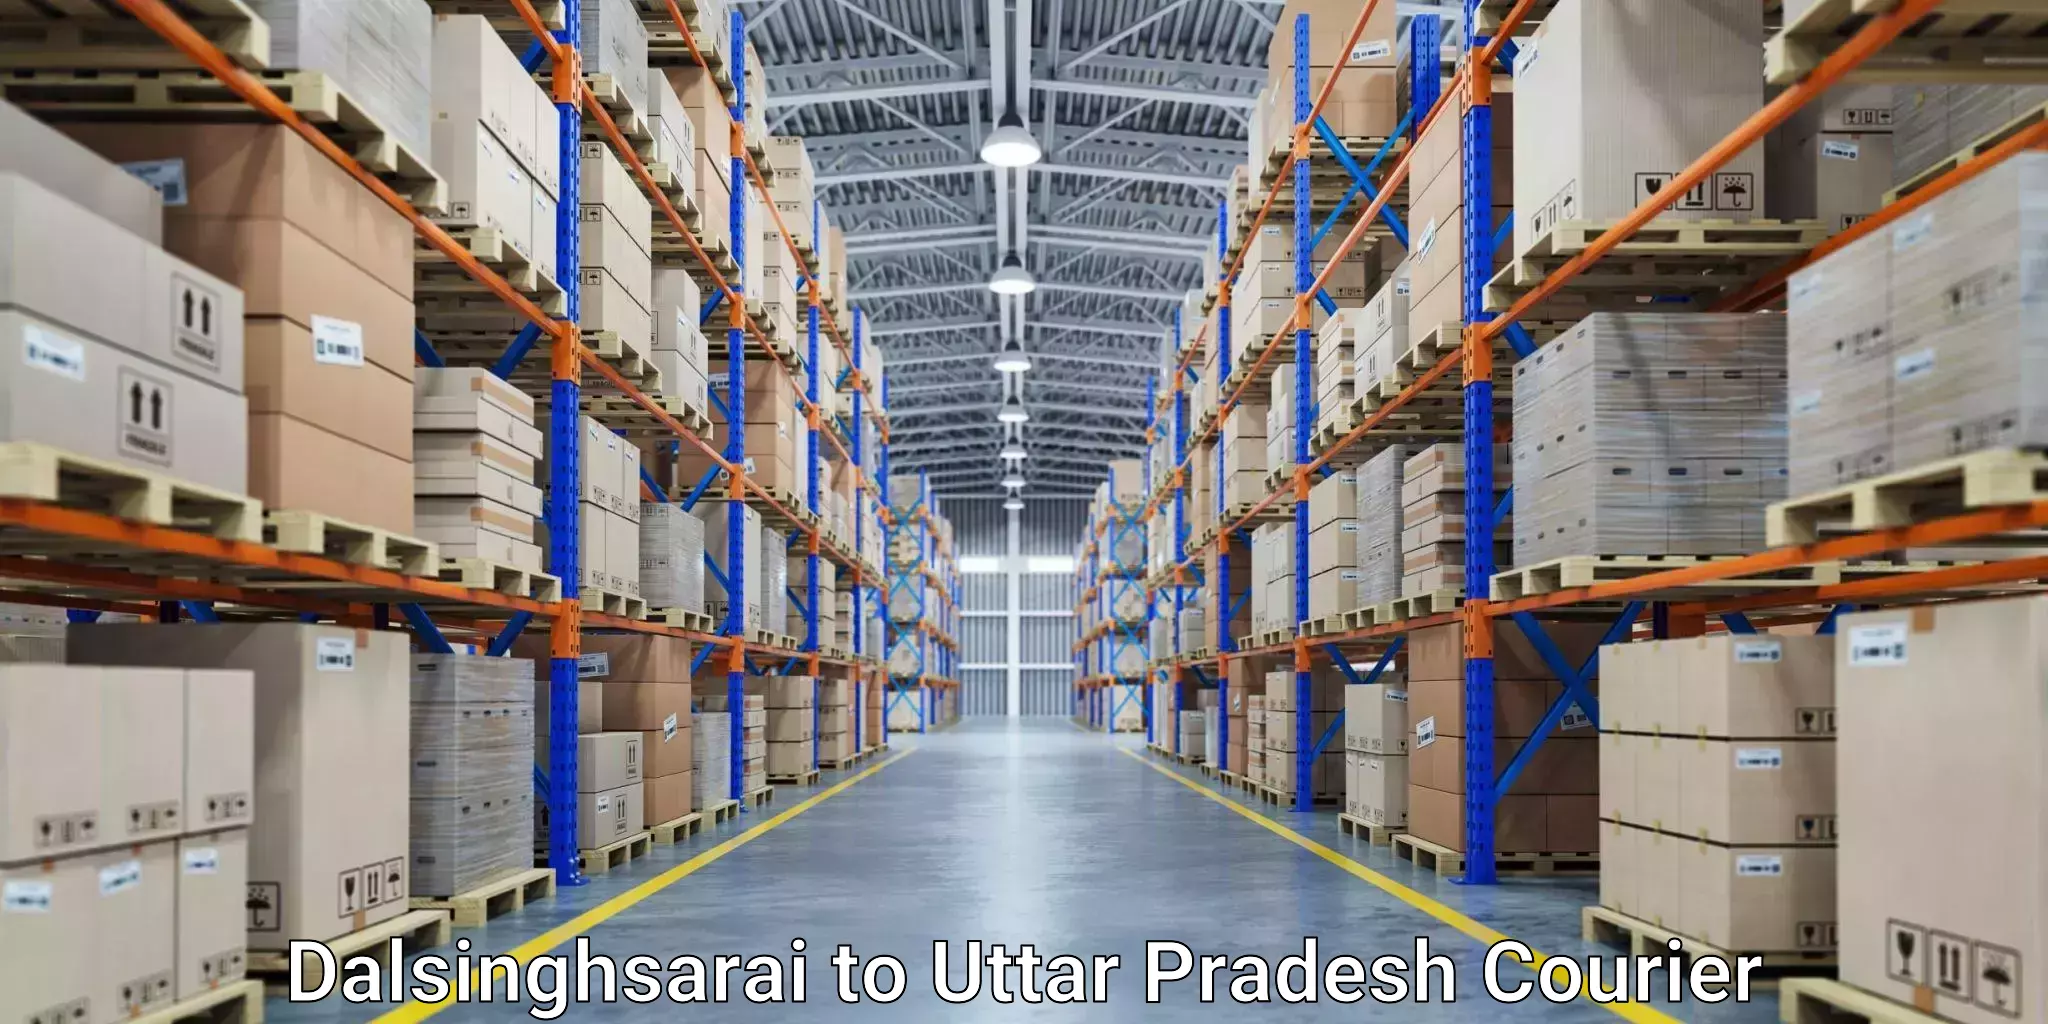 Custom courier solutions Dalsinghsarai to Anupshahar